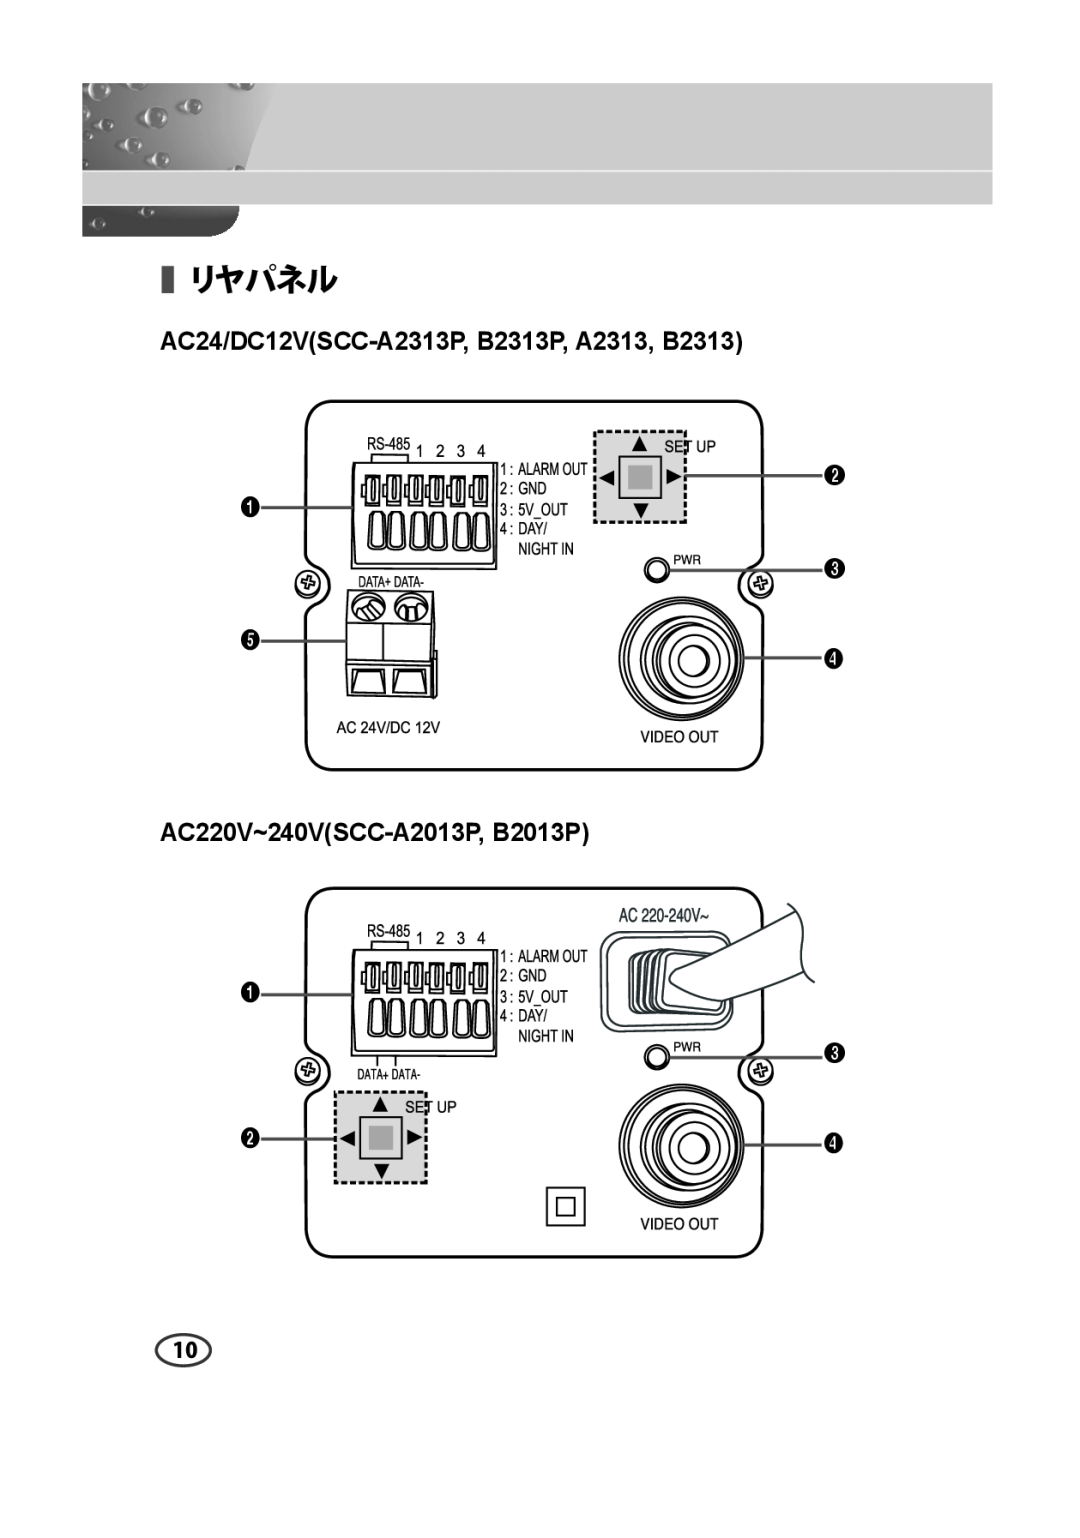 Samsung SCC-B2013P, SCC-B2313P manual リヤパネル, AC24/DC12VSCC-A2313P, B2313P, A2313, B2313, AC220V~240VSCC-A2013P, B2013P 